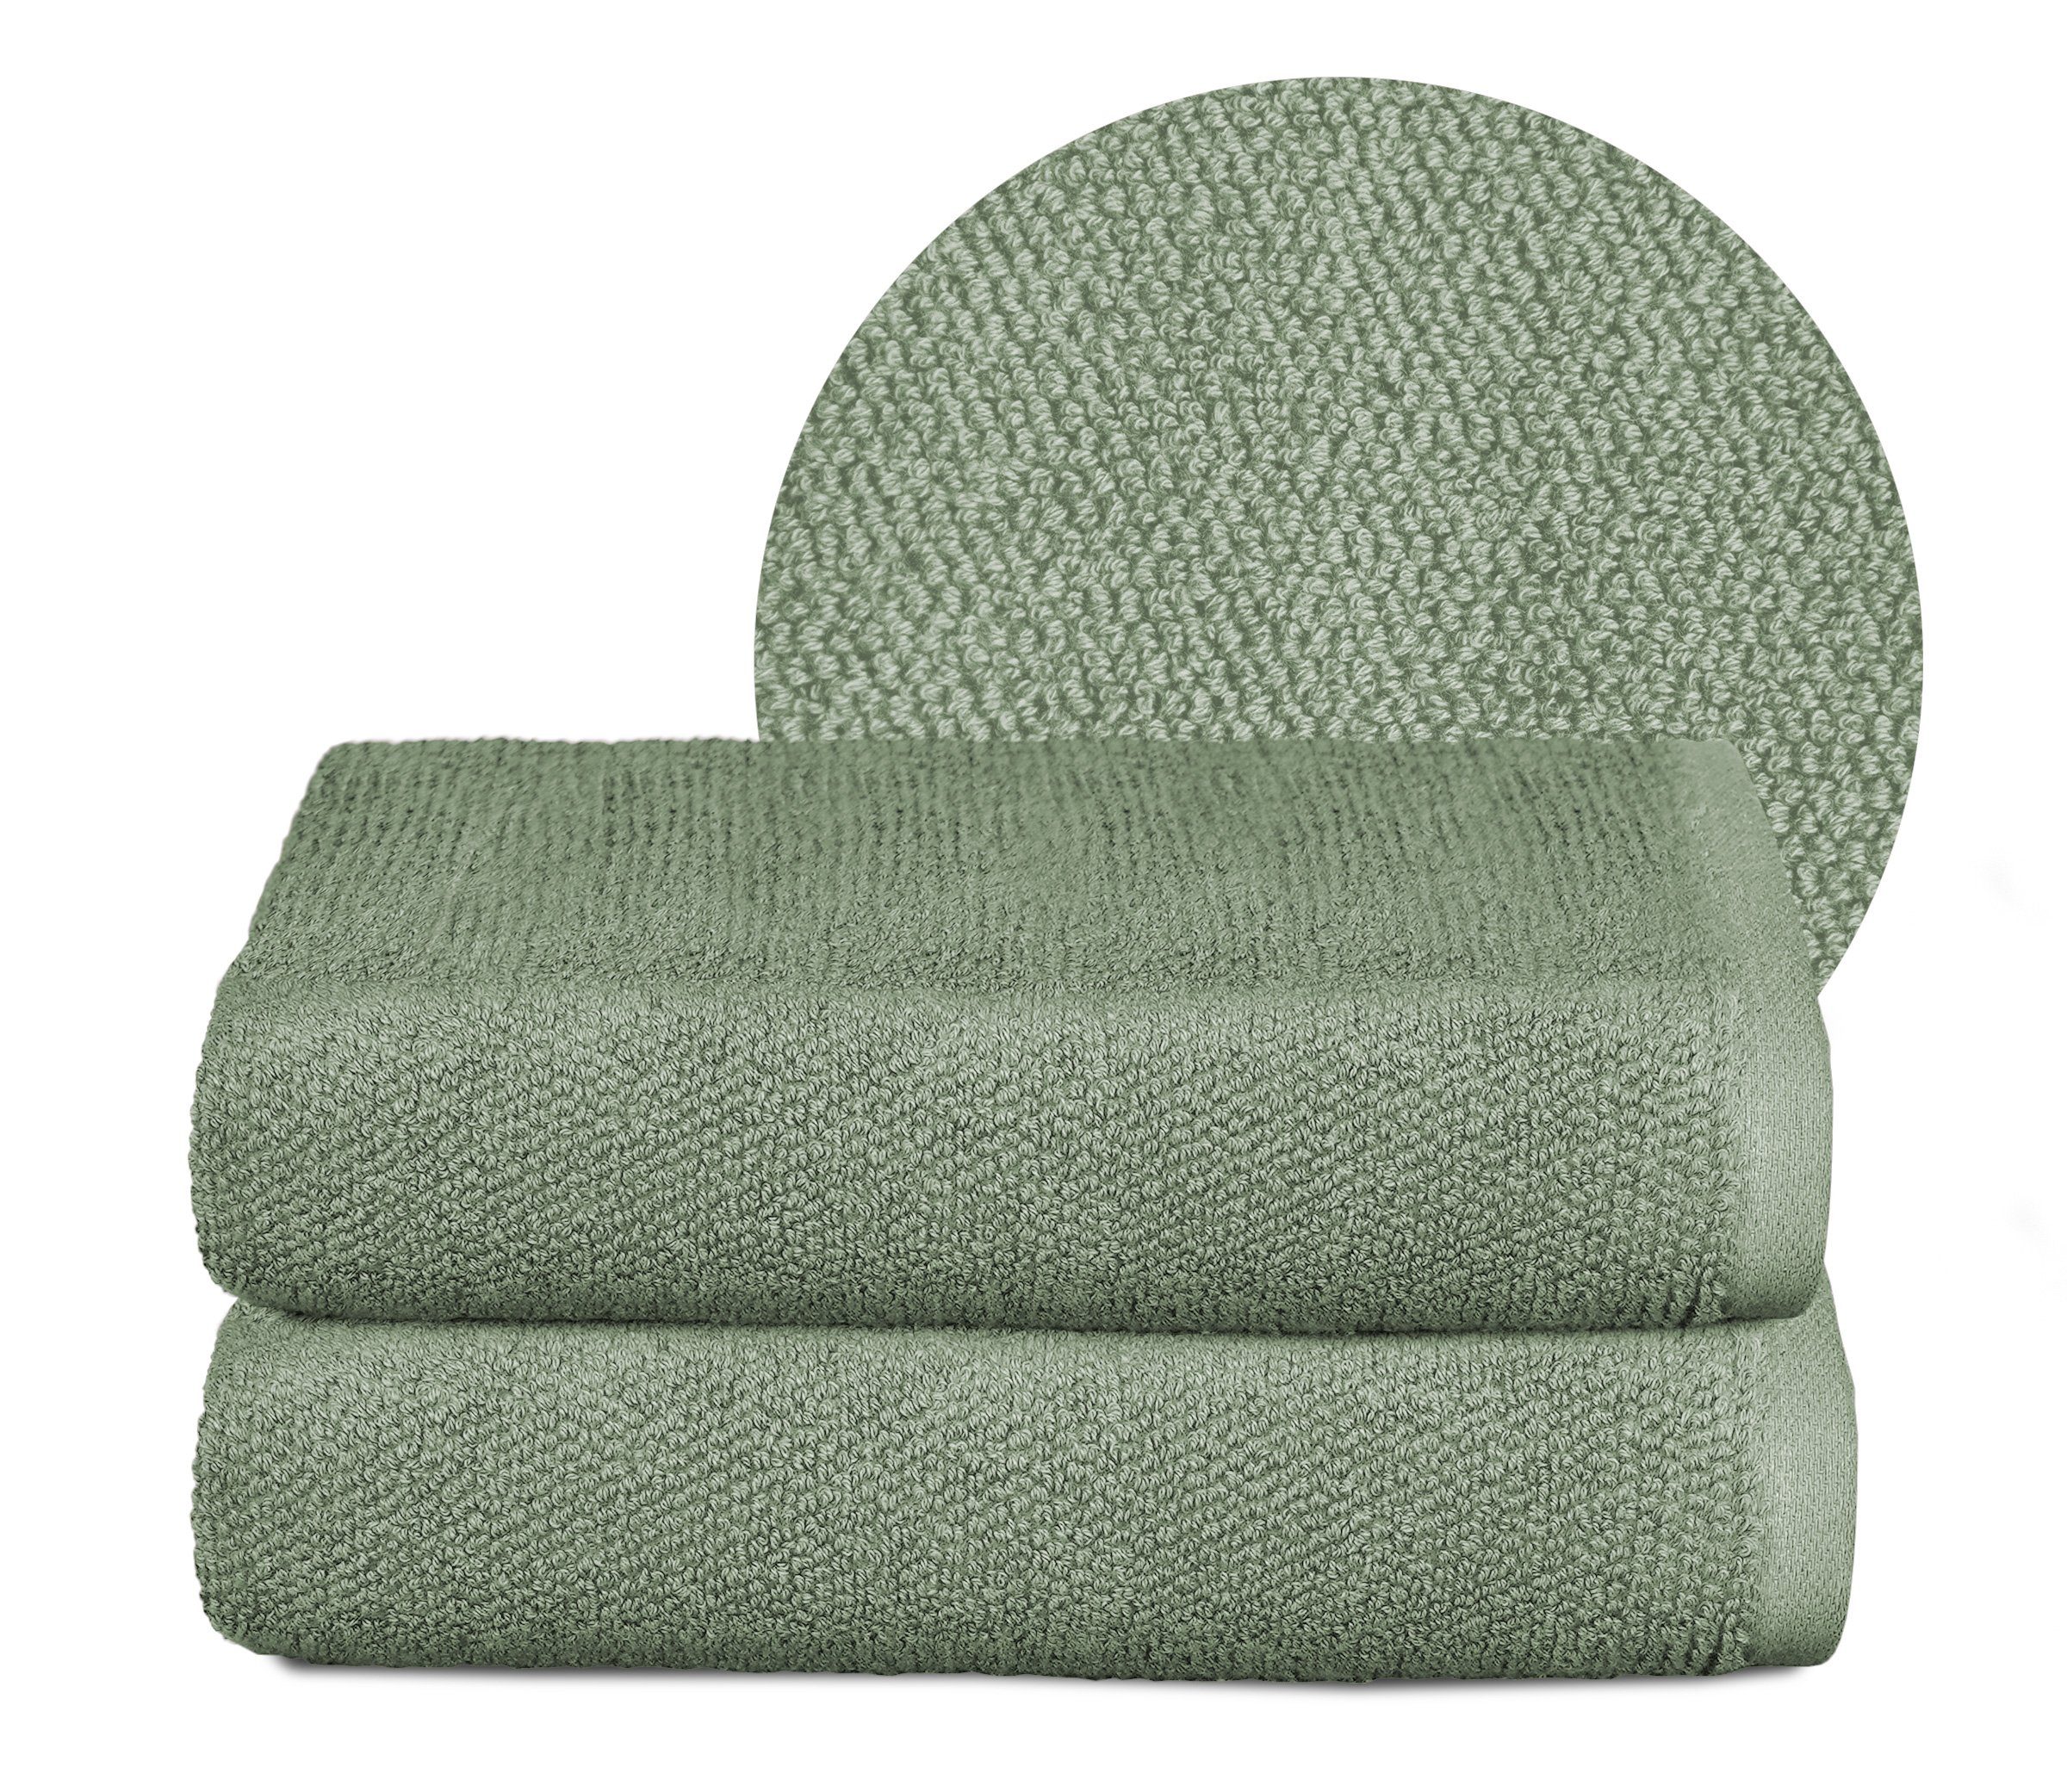 Beautex Handtuch Set Handtuch Set, Made in Europe, Frottier, (Multischlaufen-Optik, Frottier Premium Set aus 100% Baumwolle 550g/m) Eisberg-grün